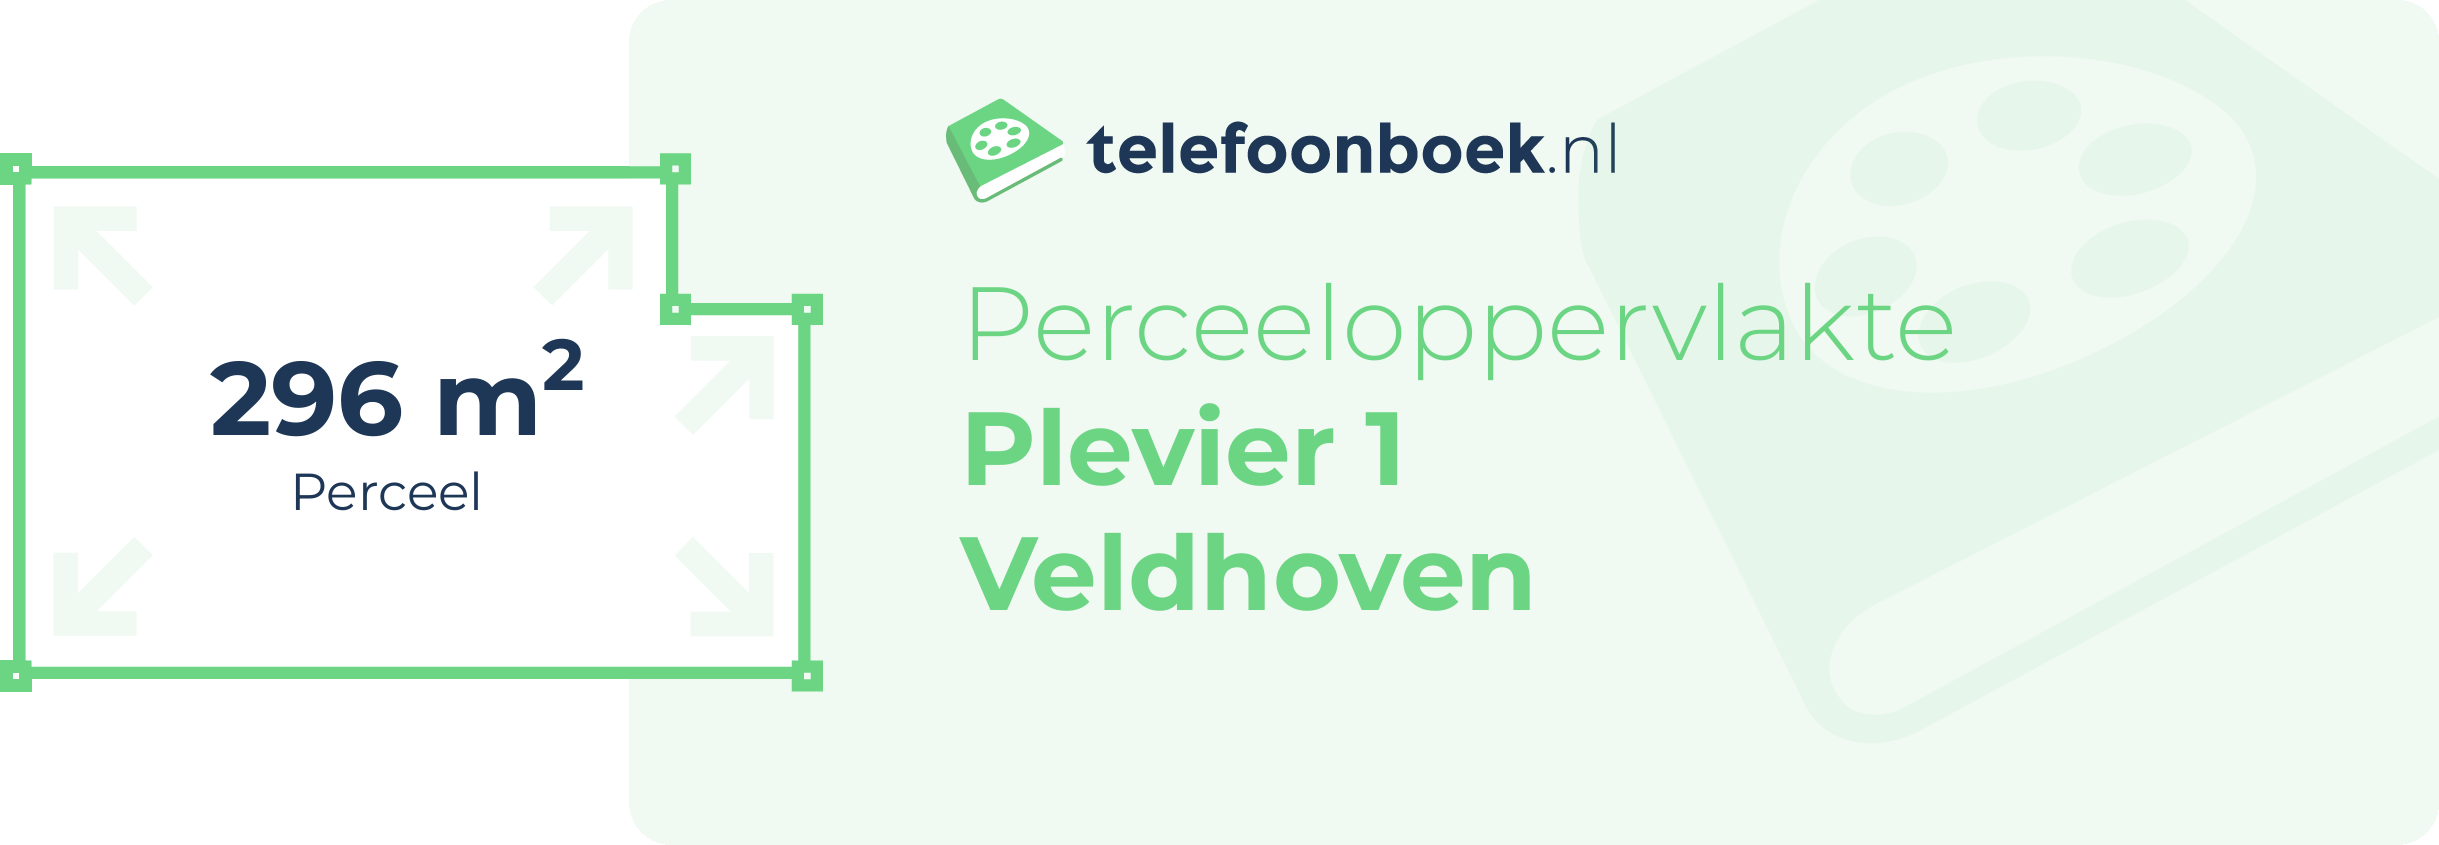 Perceeloppervlakte Plevier 1 Veldhoven